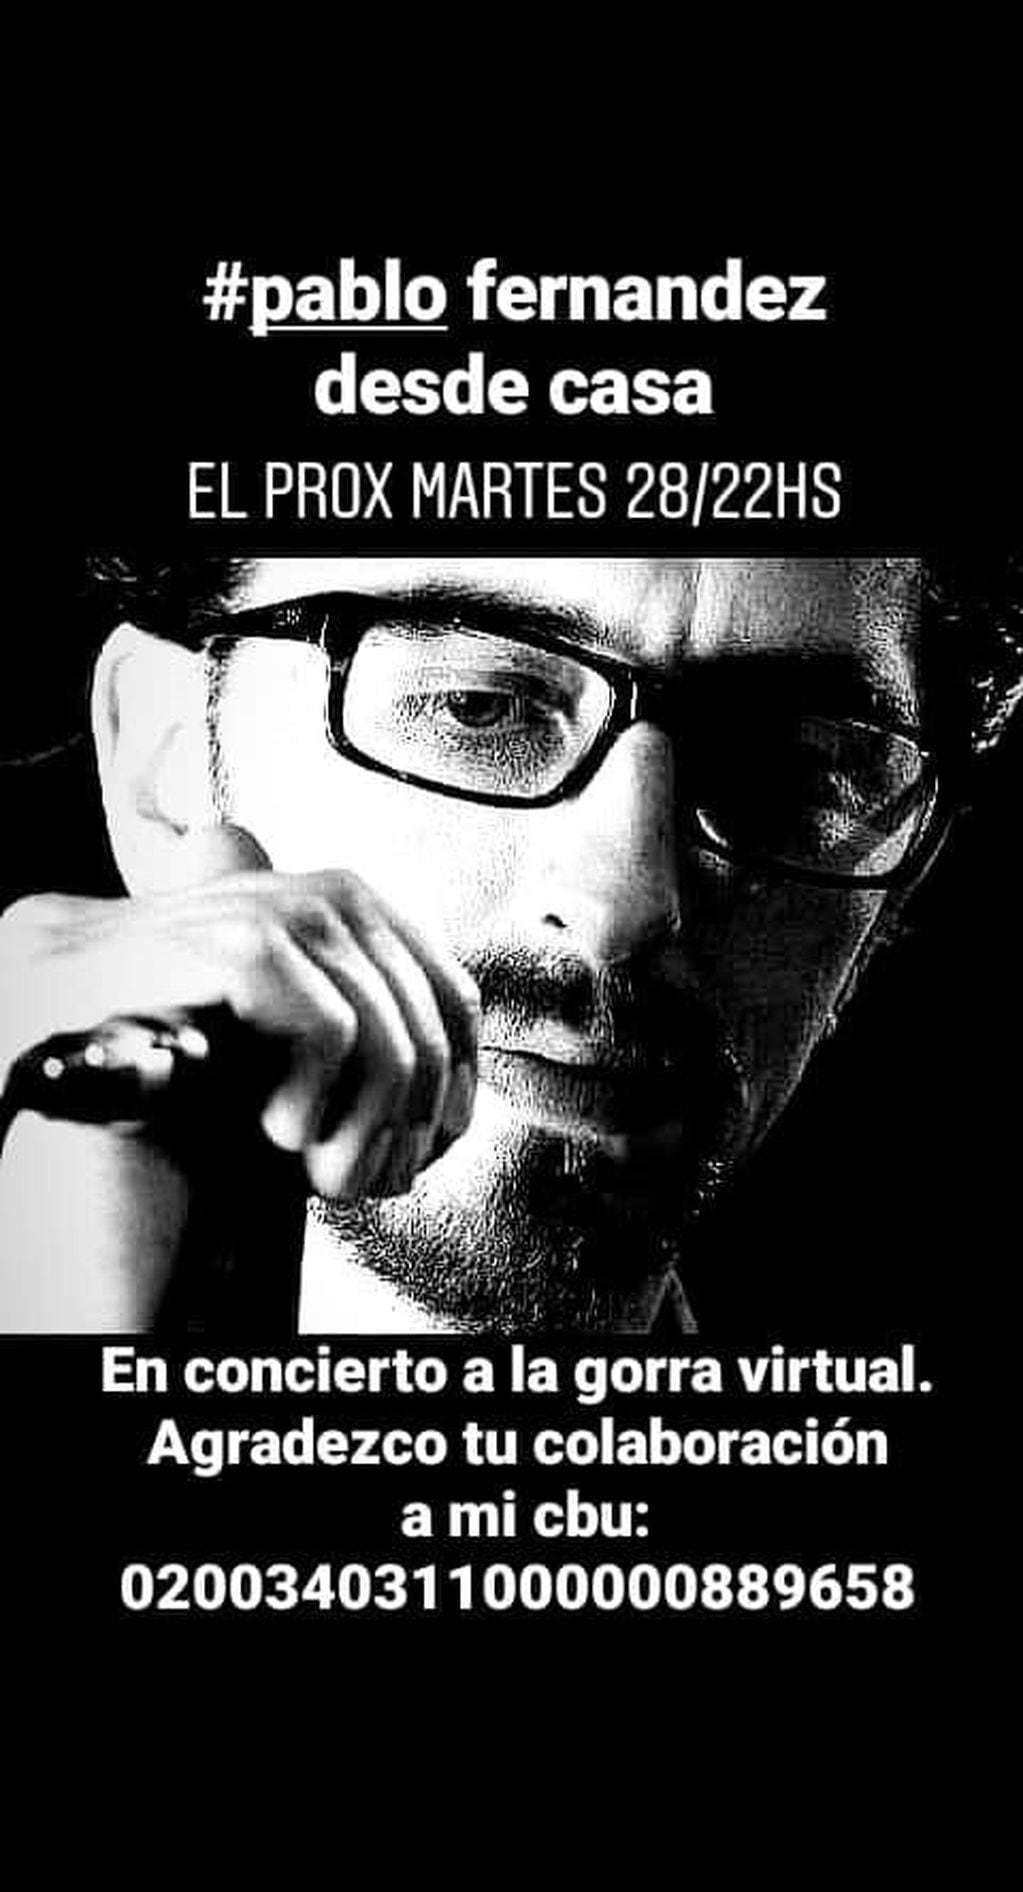 Pablo Fernandez presenta su concierto virtual